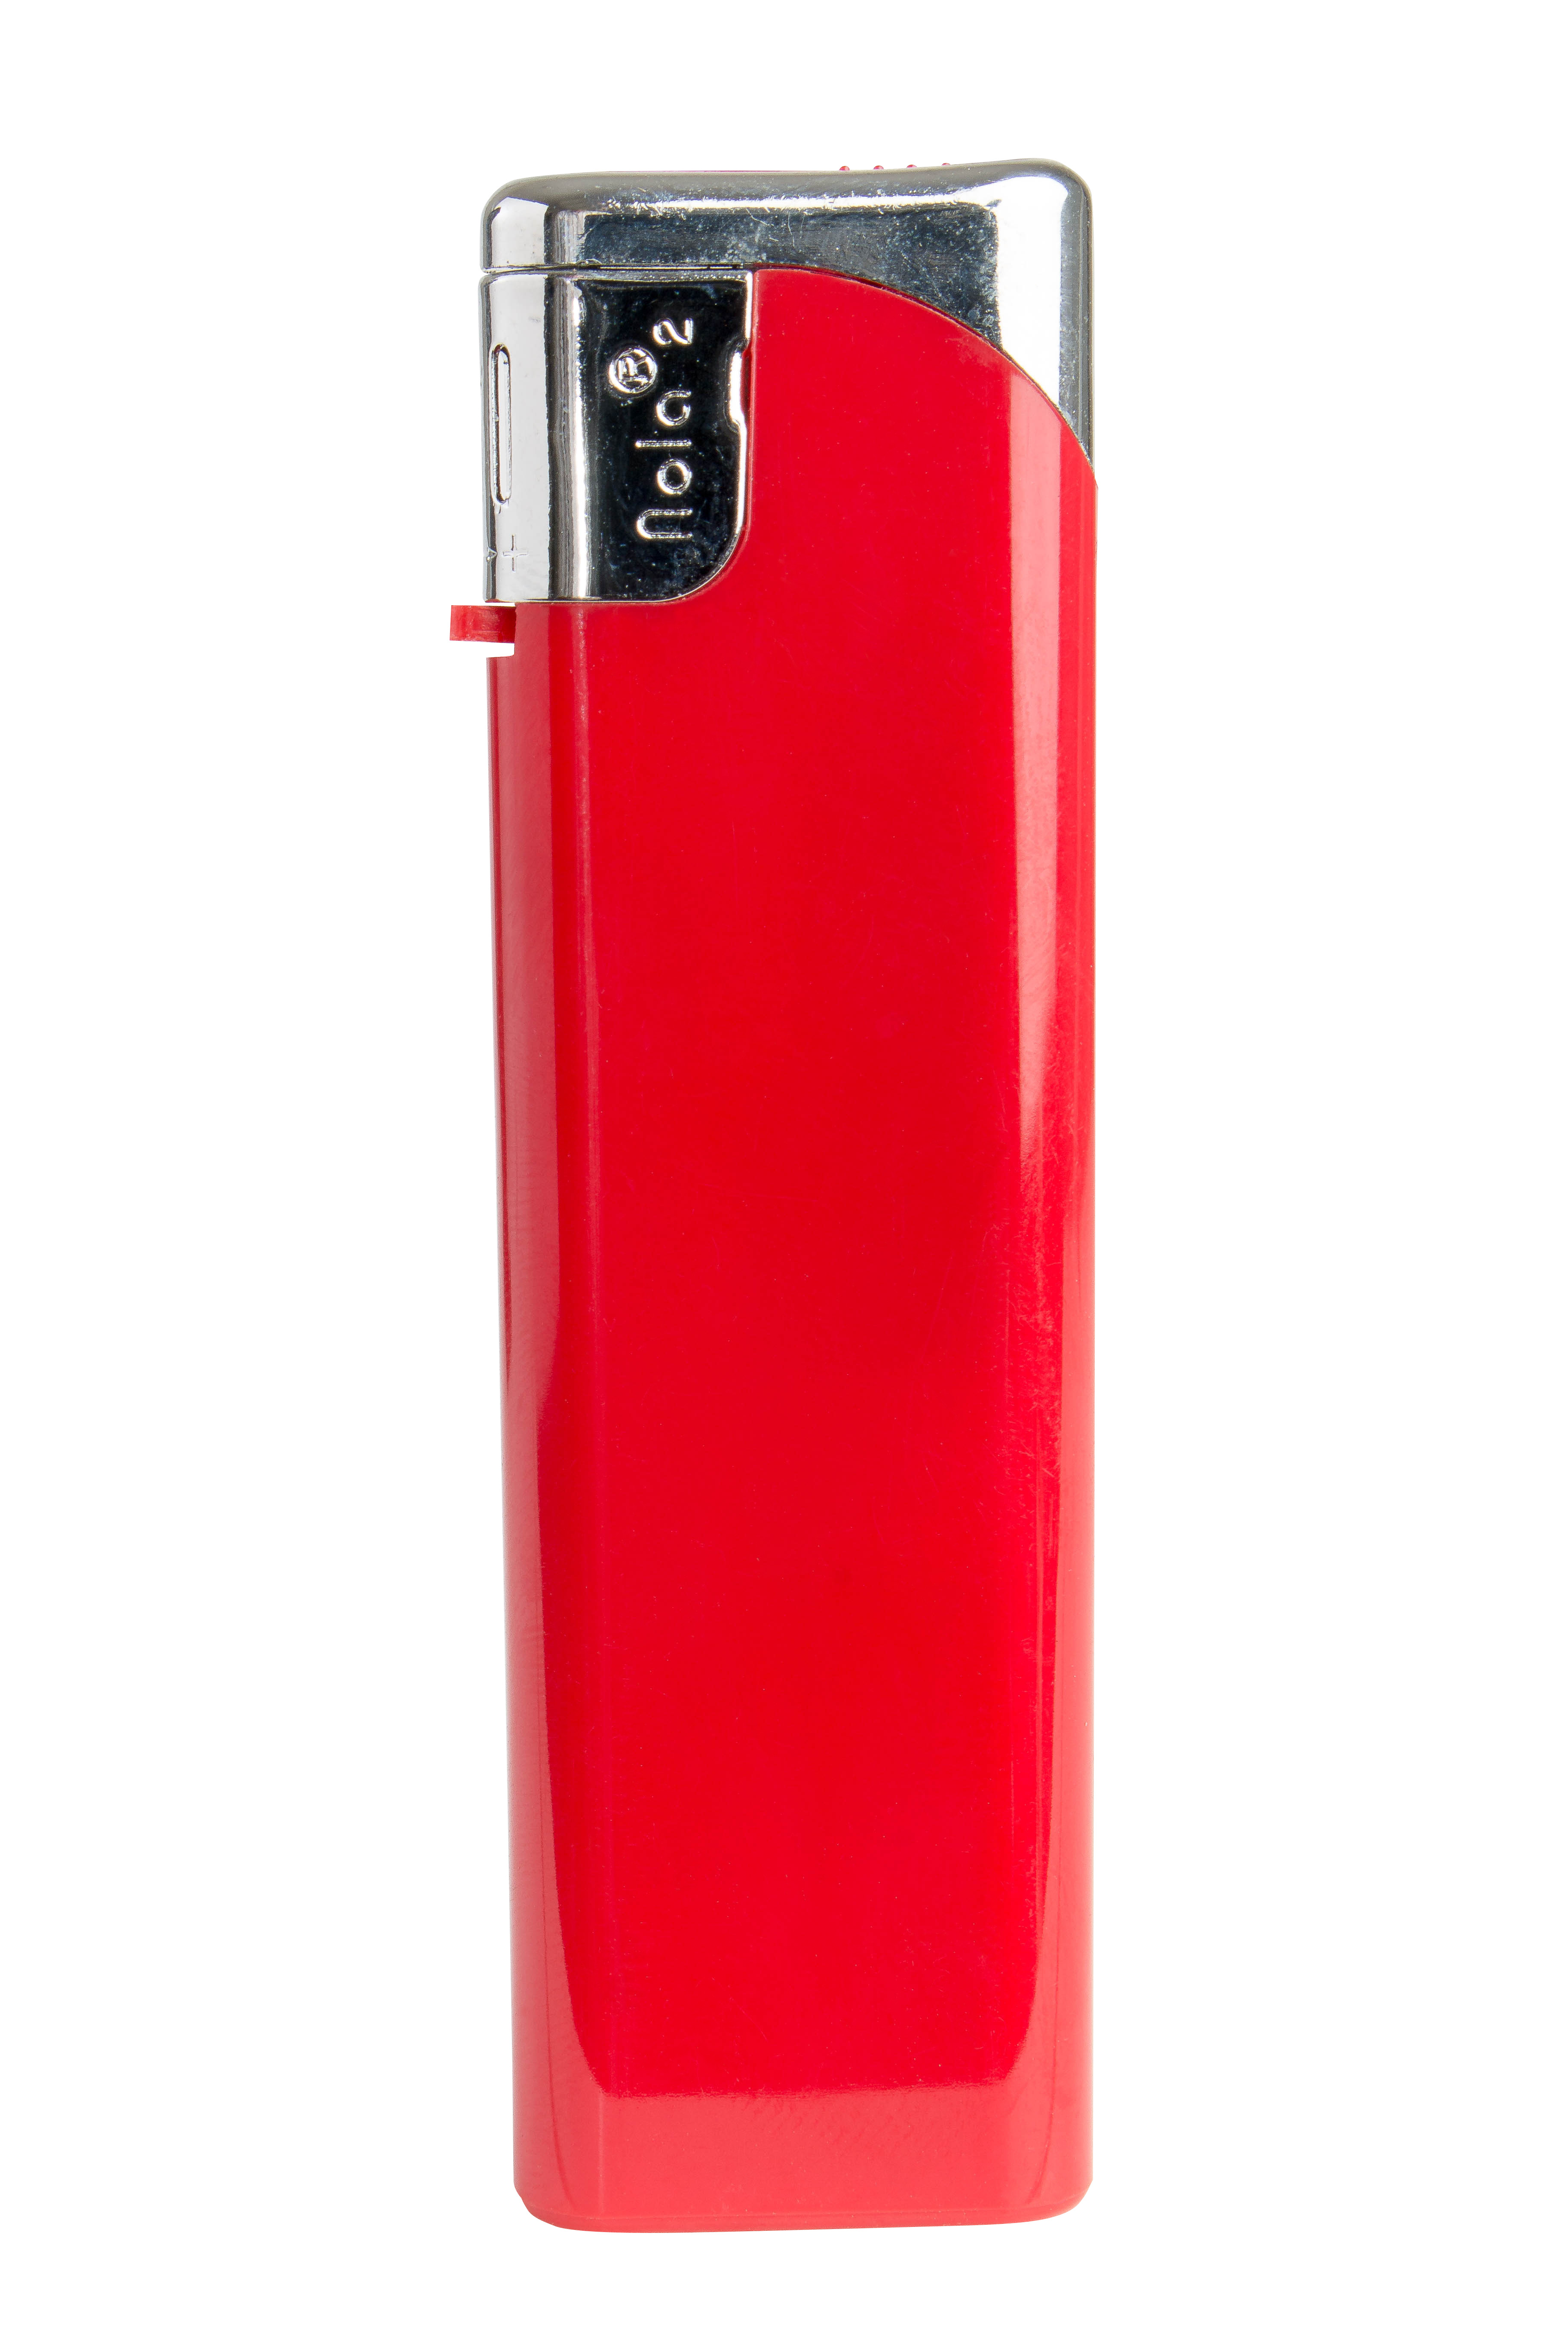 Nola 2 Elektronik Feuerzeug rot nachfüllbar Tank glänzend rot, Kappe chrome, Drücker rot